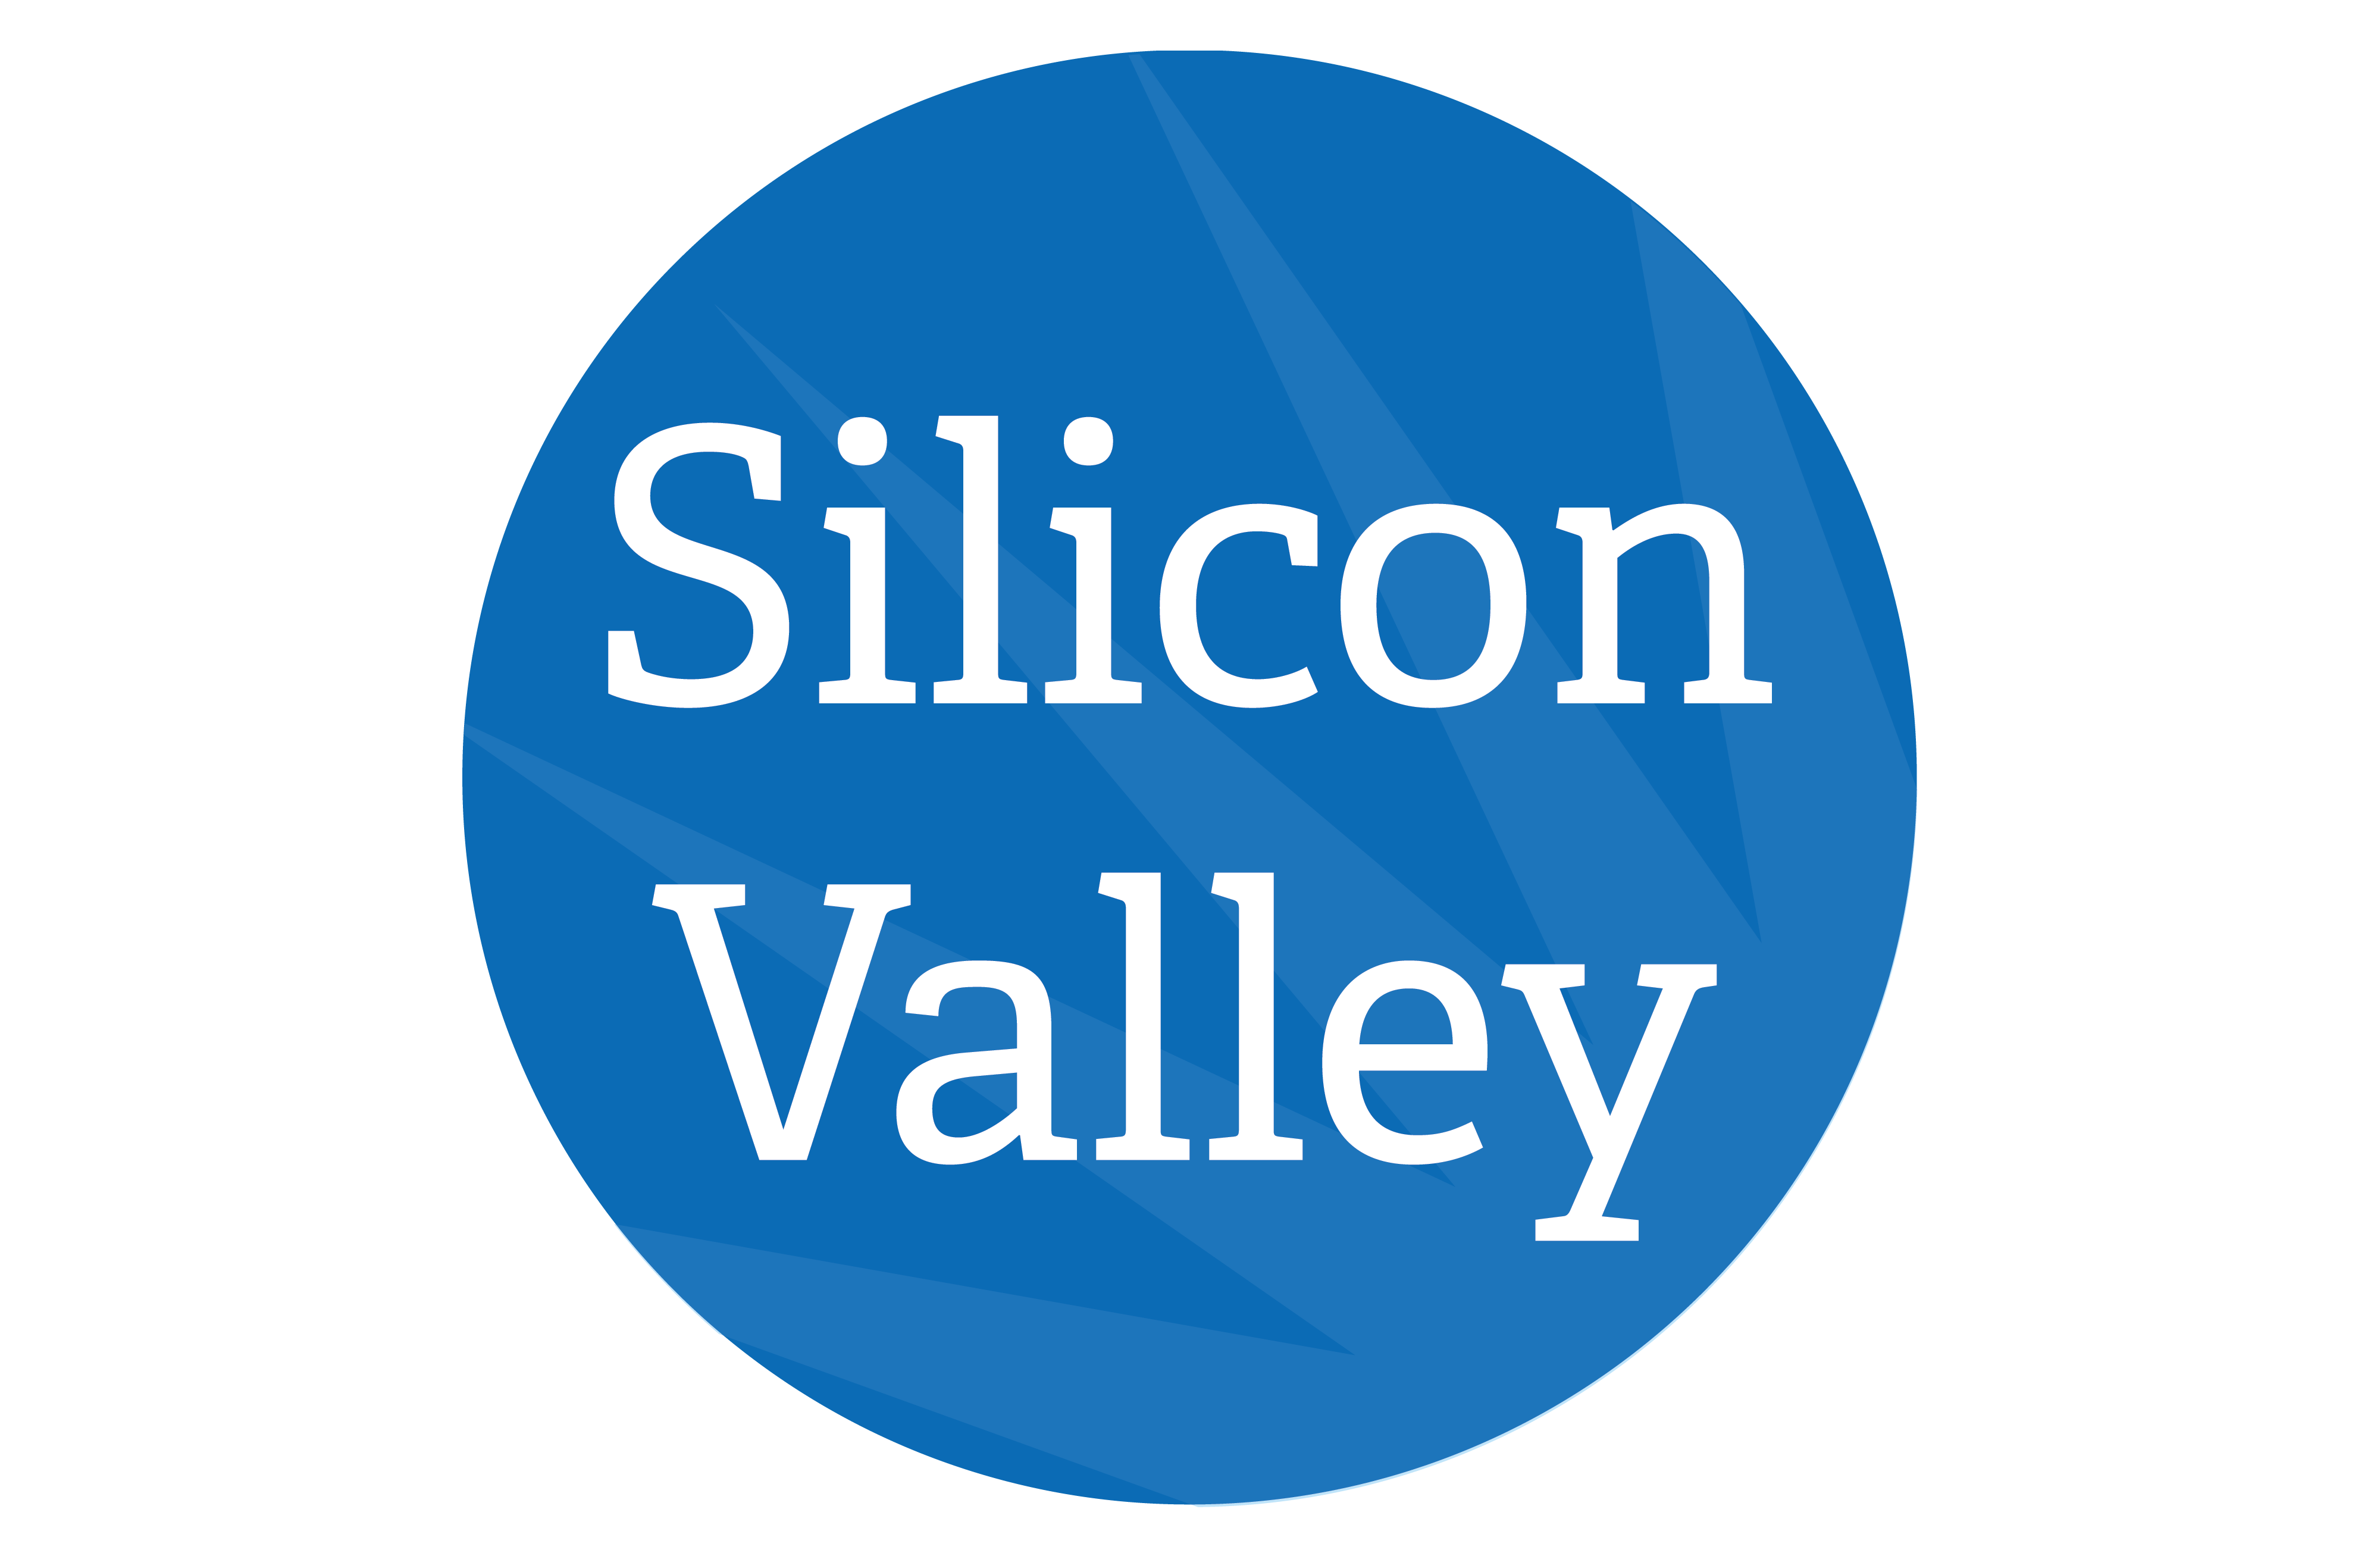 Silicon Valley Programs